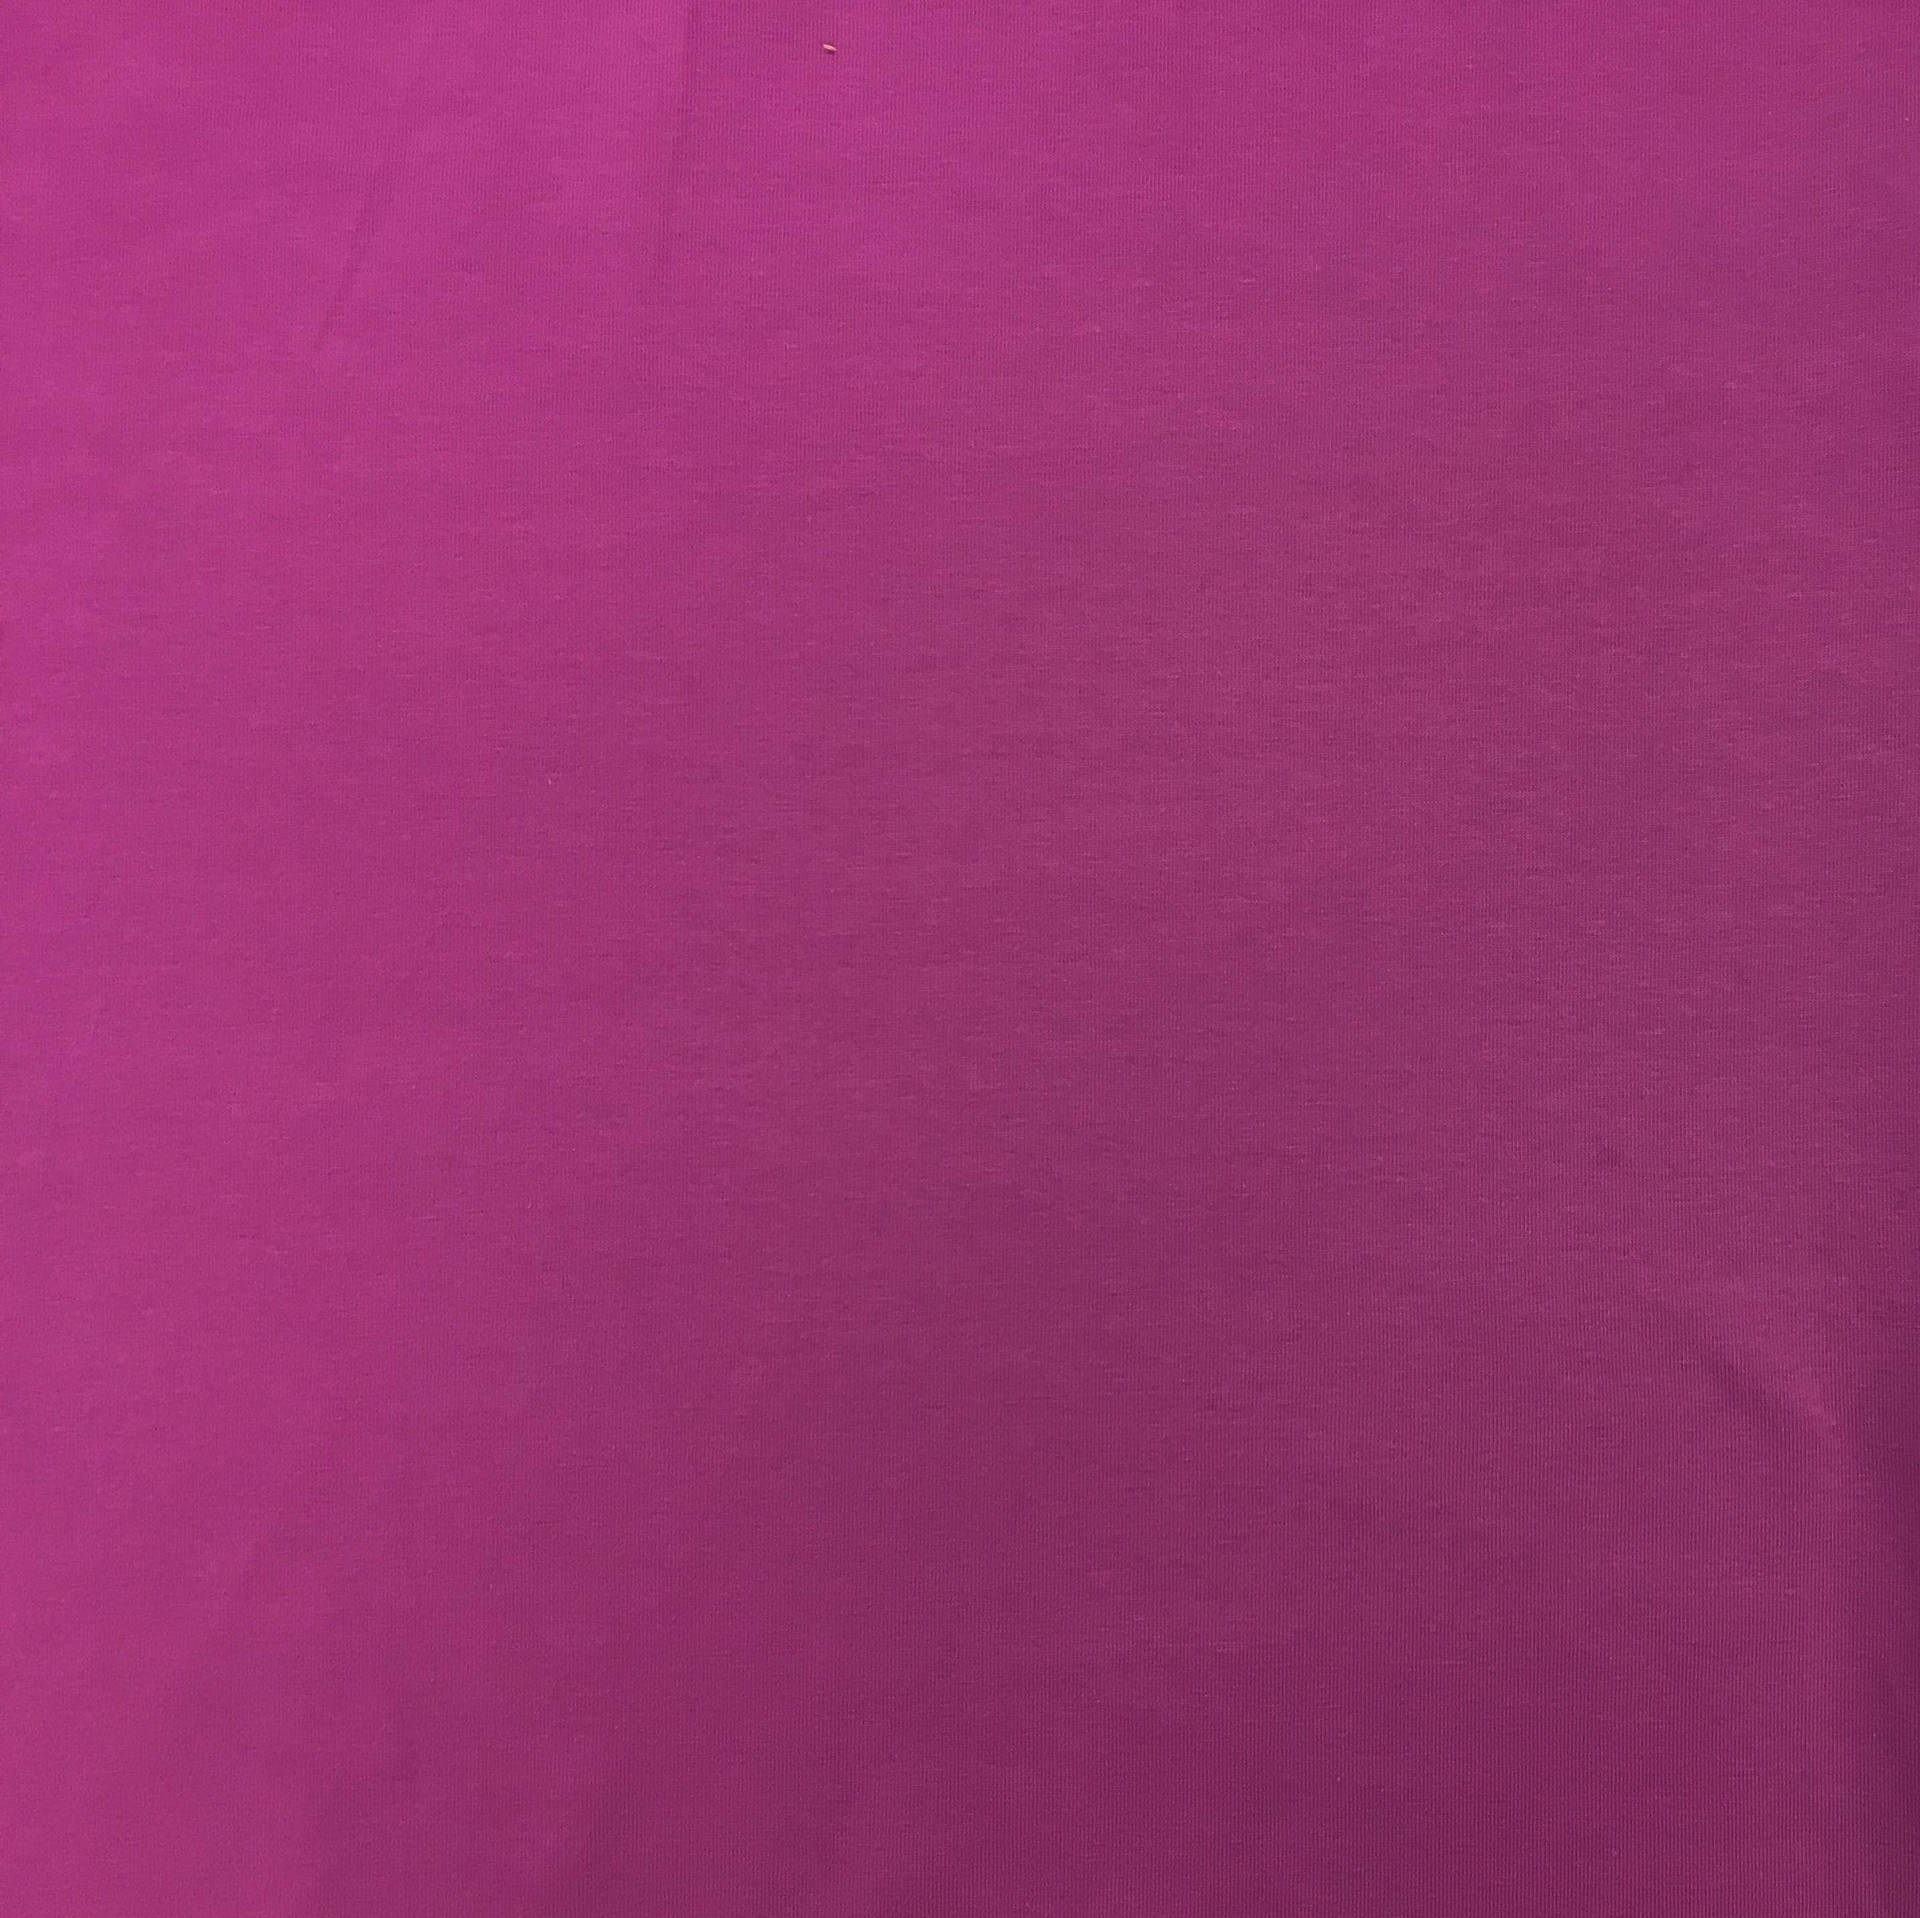 Plain Magenta Solid Color Background